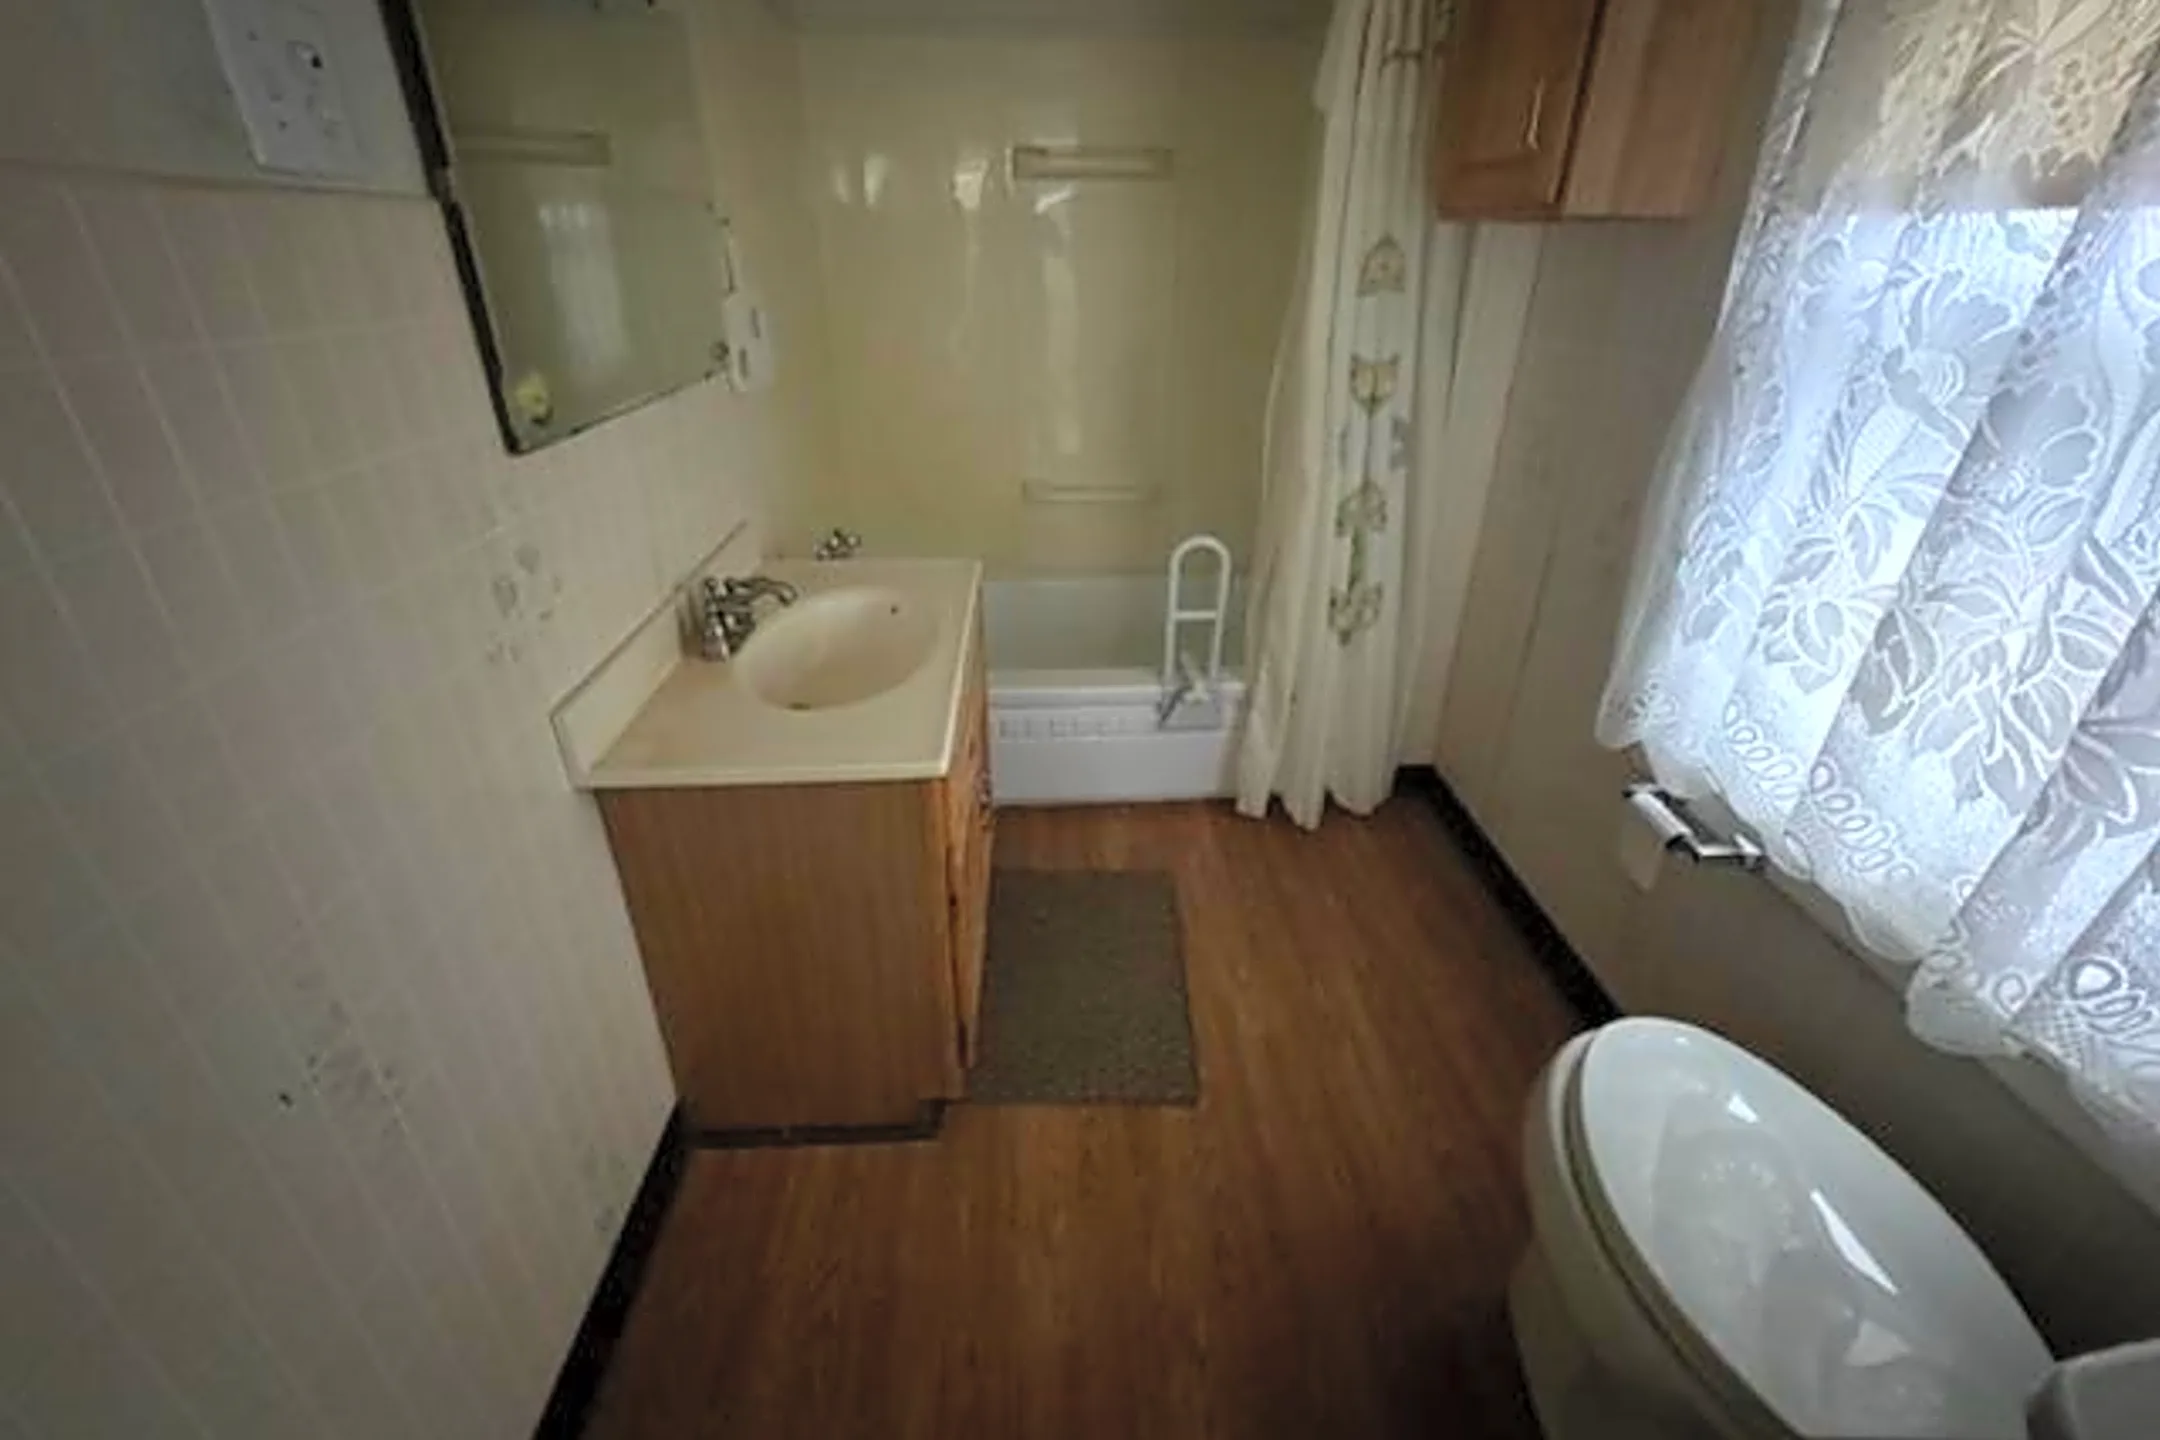 Bathroom - 1303 Davidson Way - Aliquippa, PA